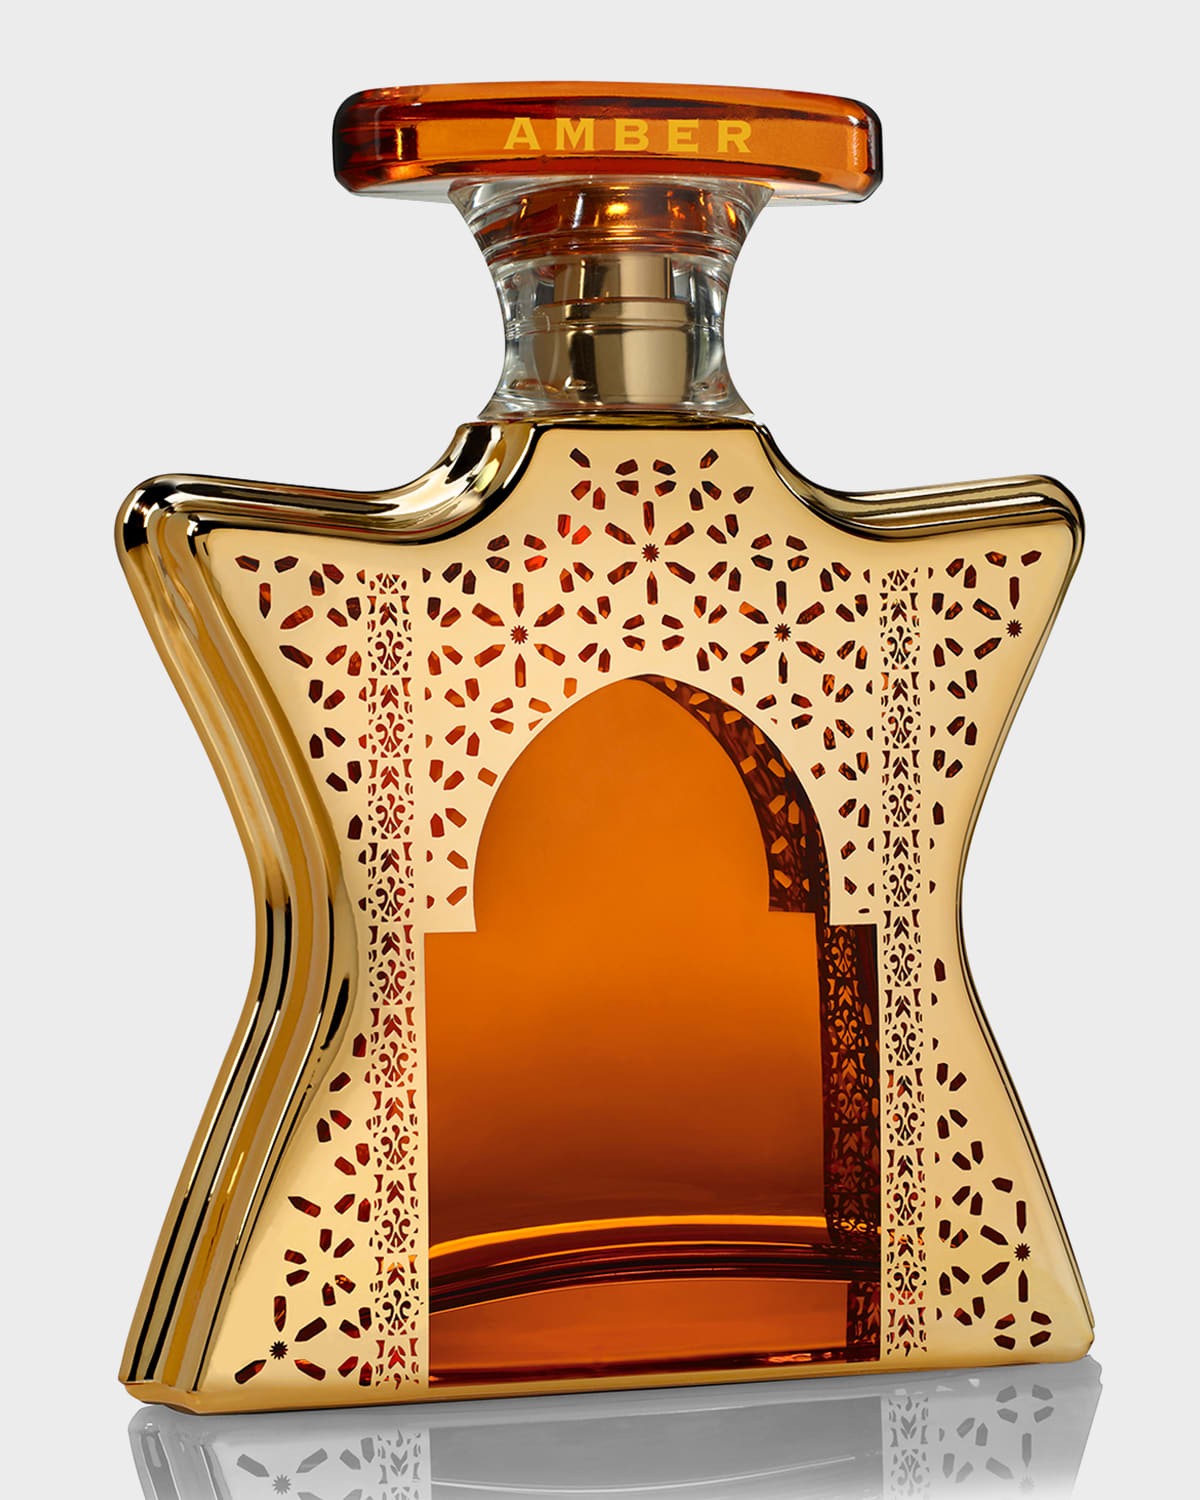 Bond No.9 New York Dubai Amber Eau de Parfum, 3.4 oz.